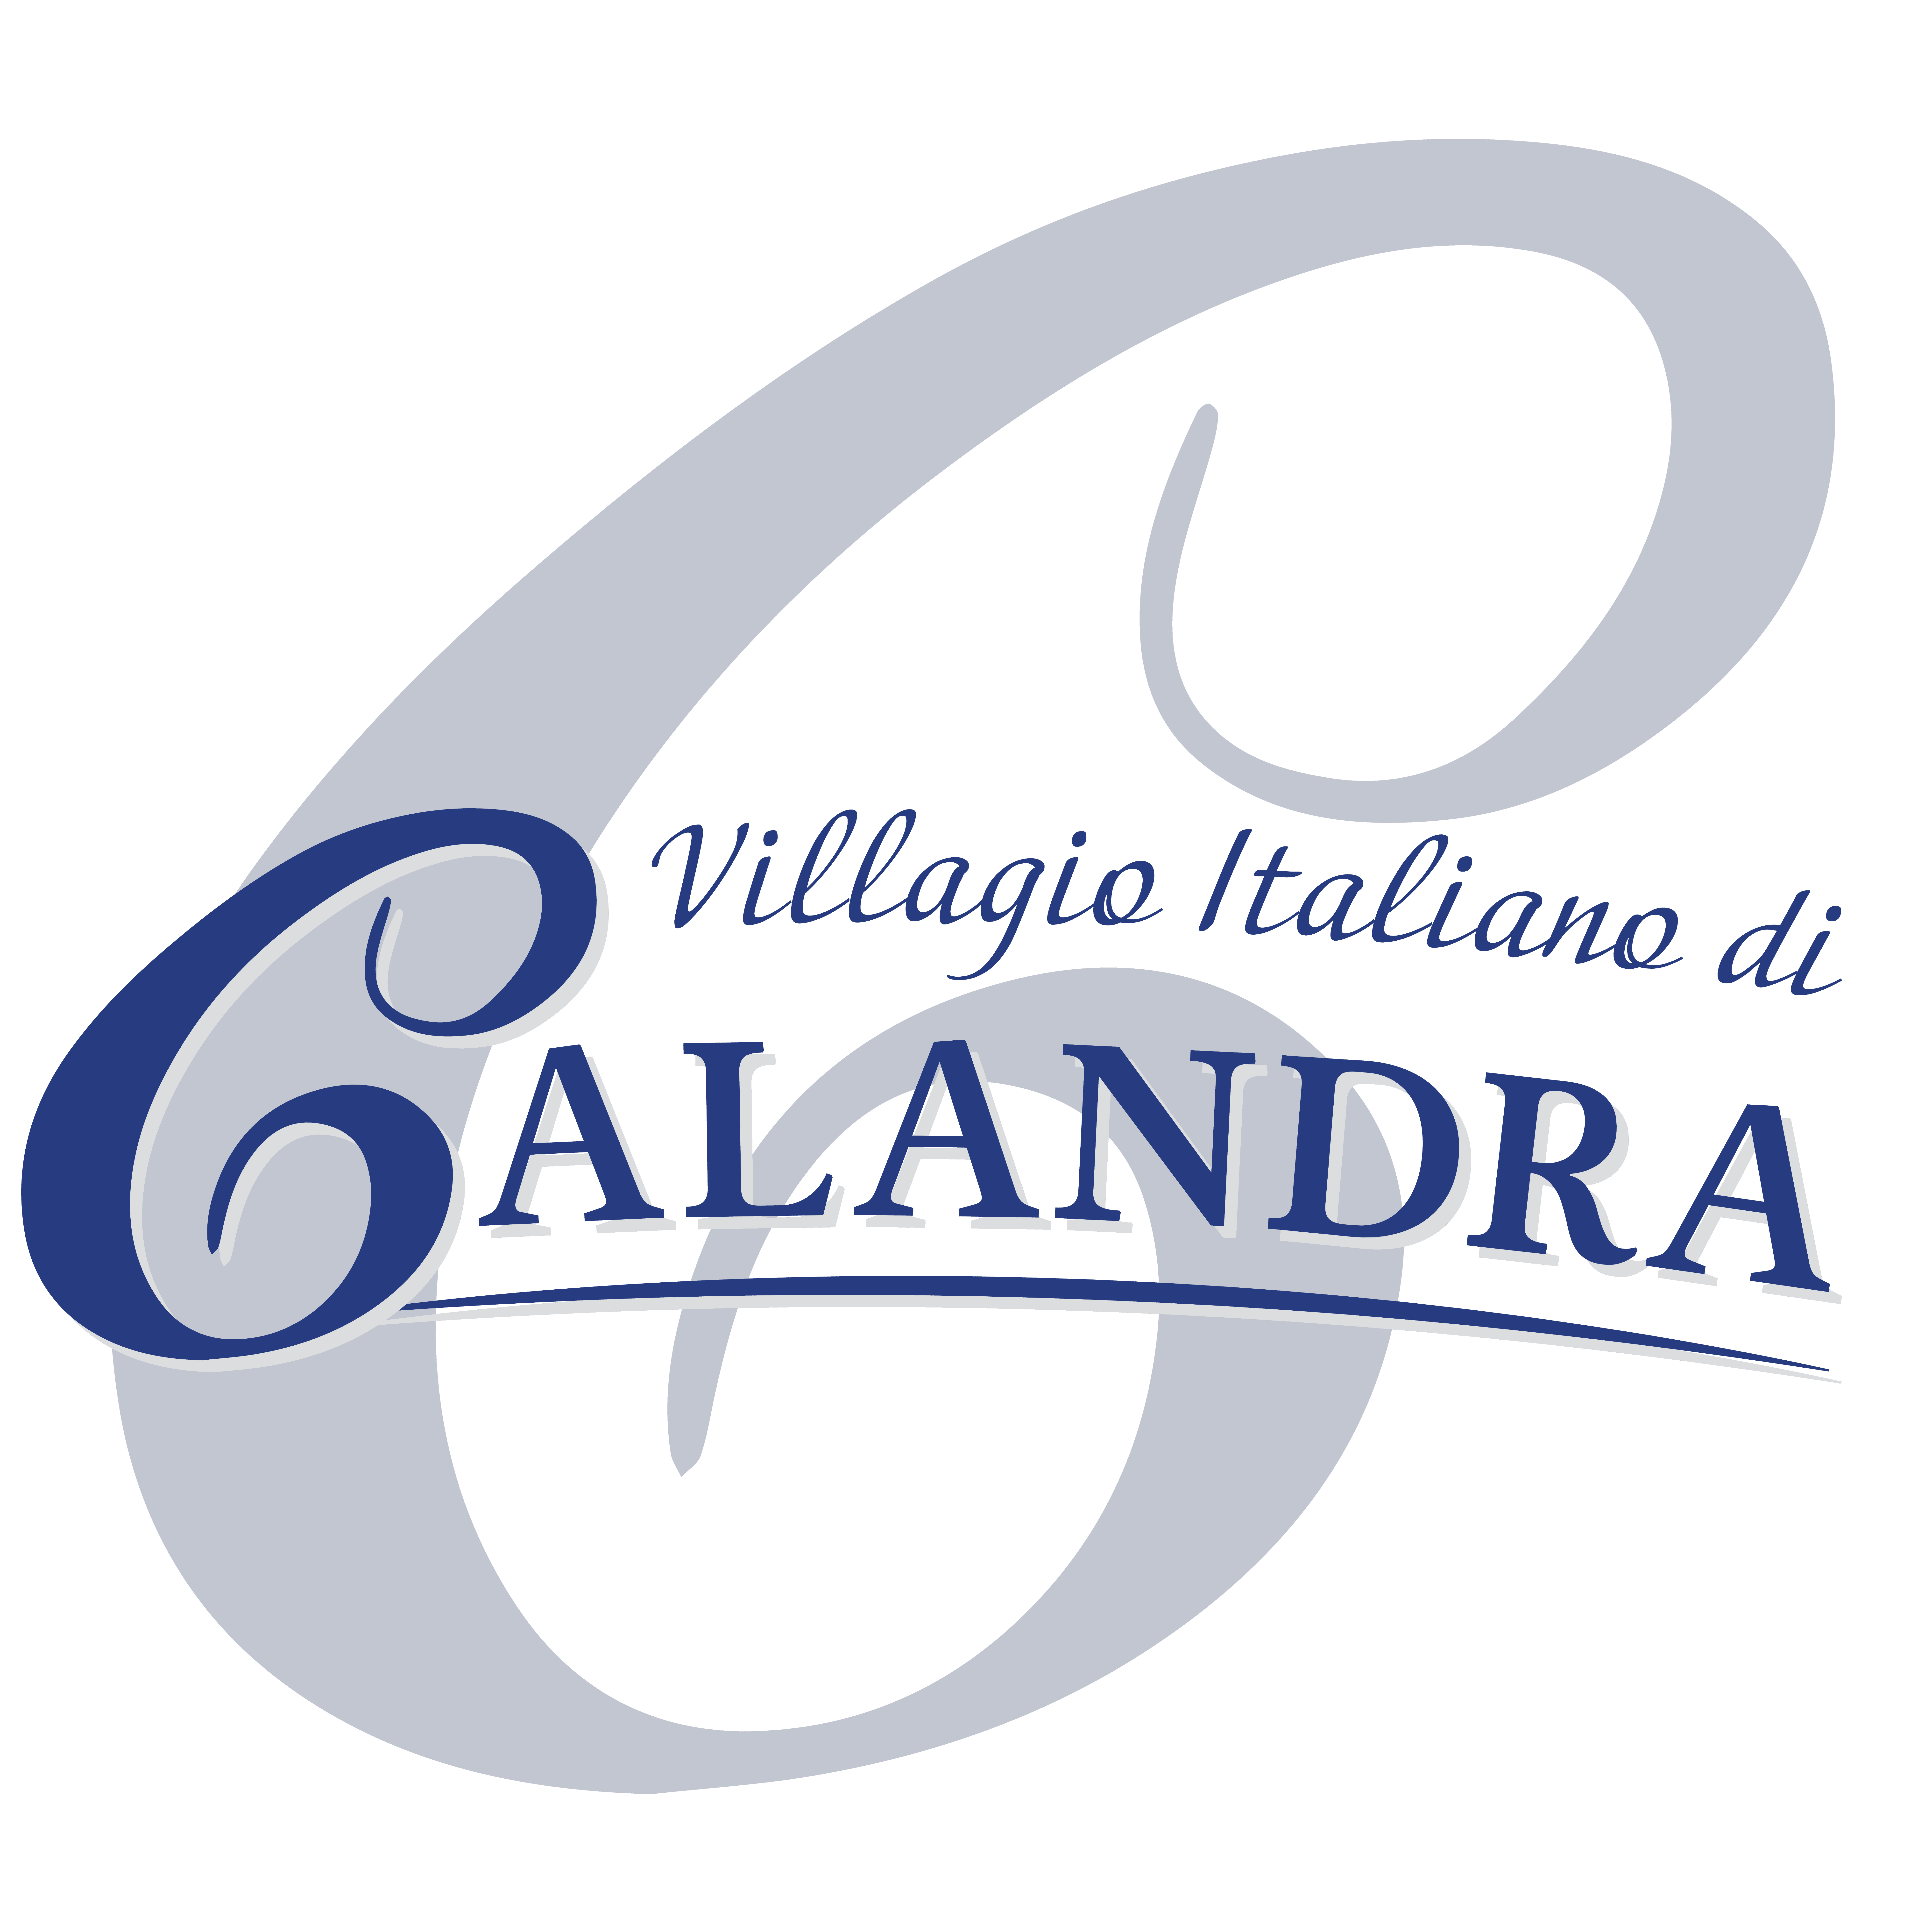 Calandra's Italian Village Logo